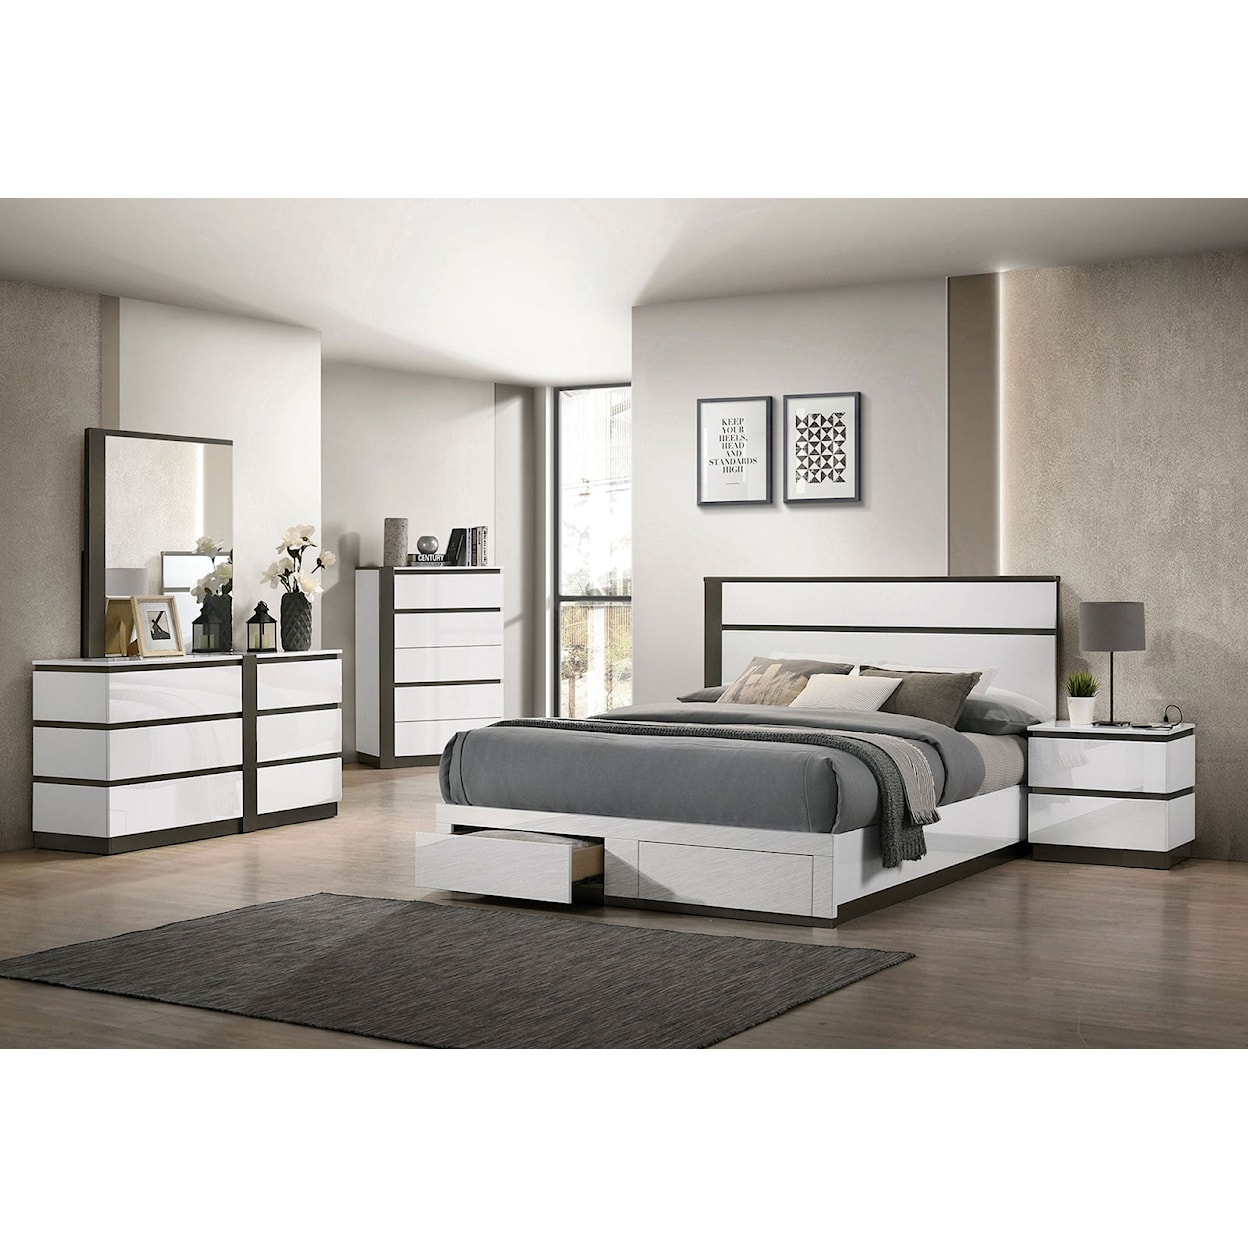 Furniture of America Birsfelden 5-Piece Queen Bedroom Set Footboard Storage